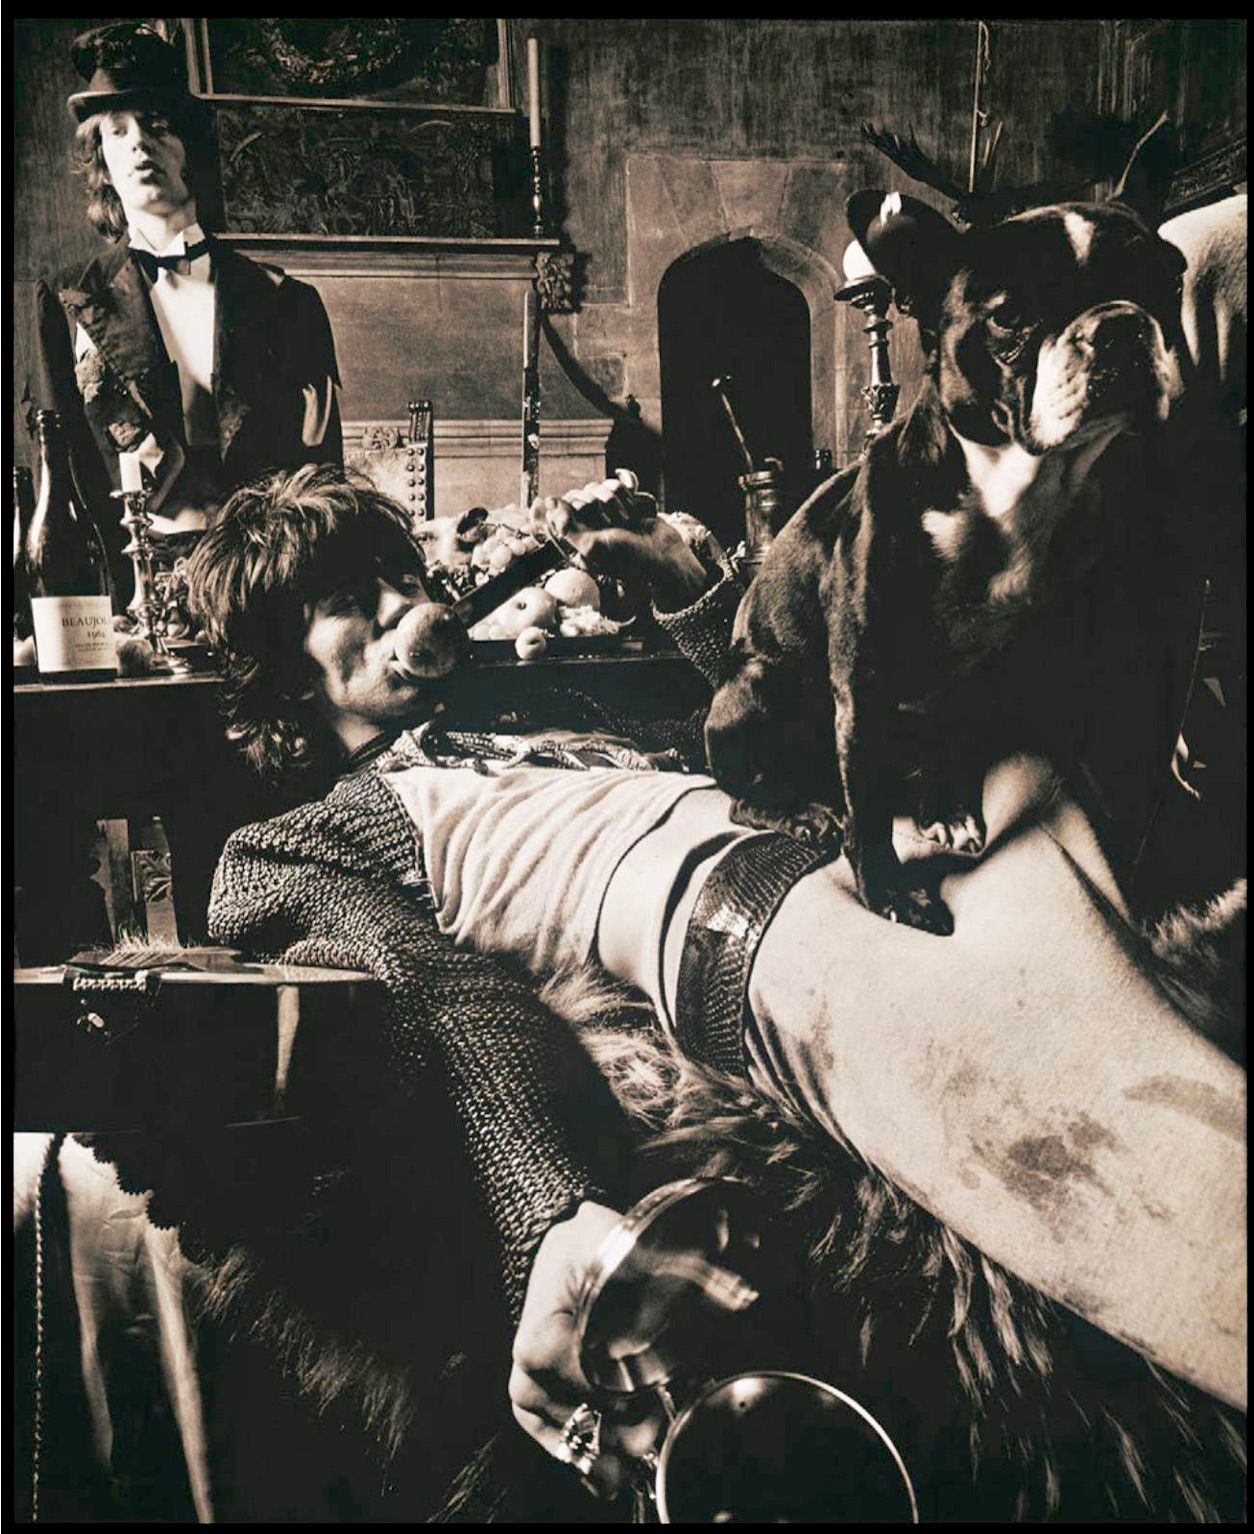 Michael Joseph's "Rolling Stones, Beggars Banquet, Keith &Pug" Fotografie aus dem berühmten Fotoshooting der Rolling Stones für ihr Album Beggars Banquet im Herrenhaus Sarum Chase, Hampstead, London, 1968. Originalfotografie, direkt vom Originalnegativ gedruckt.